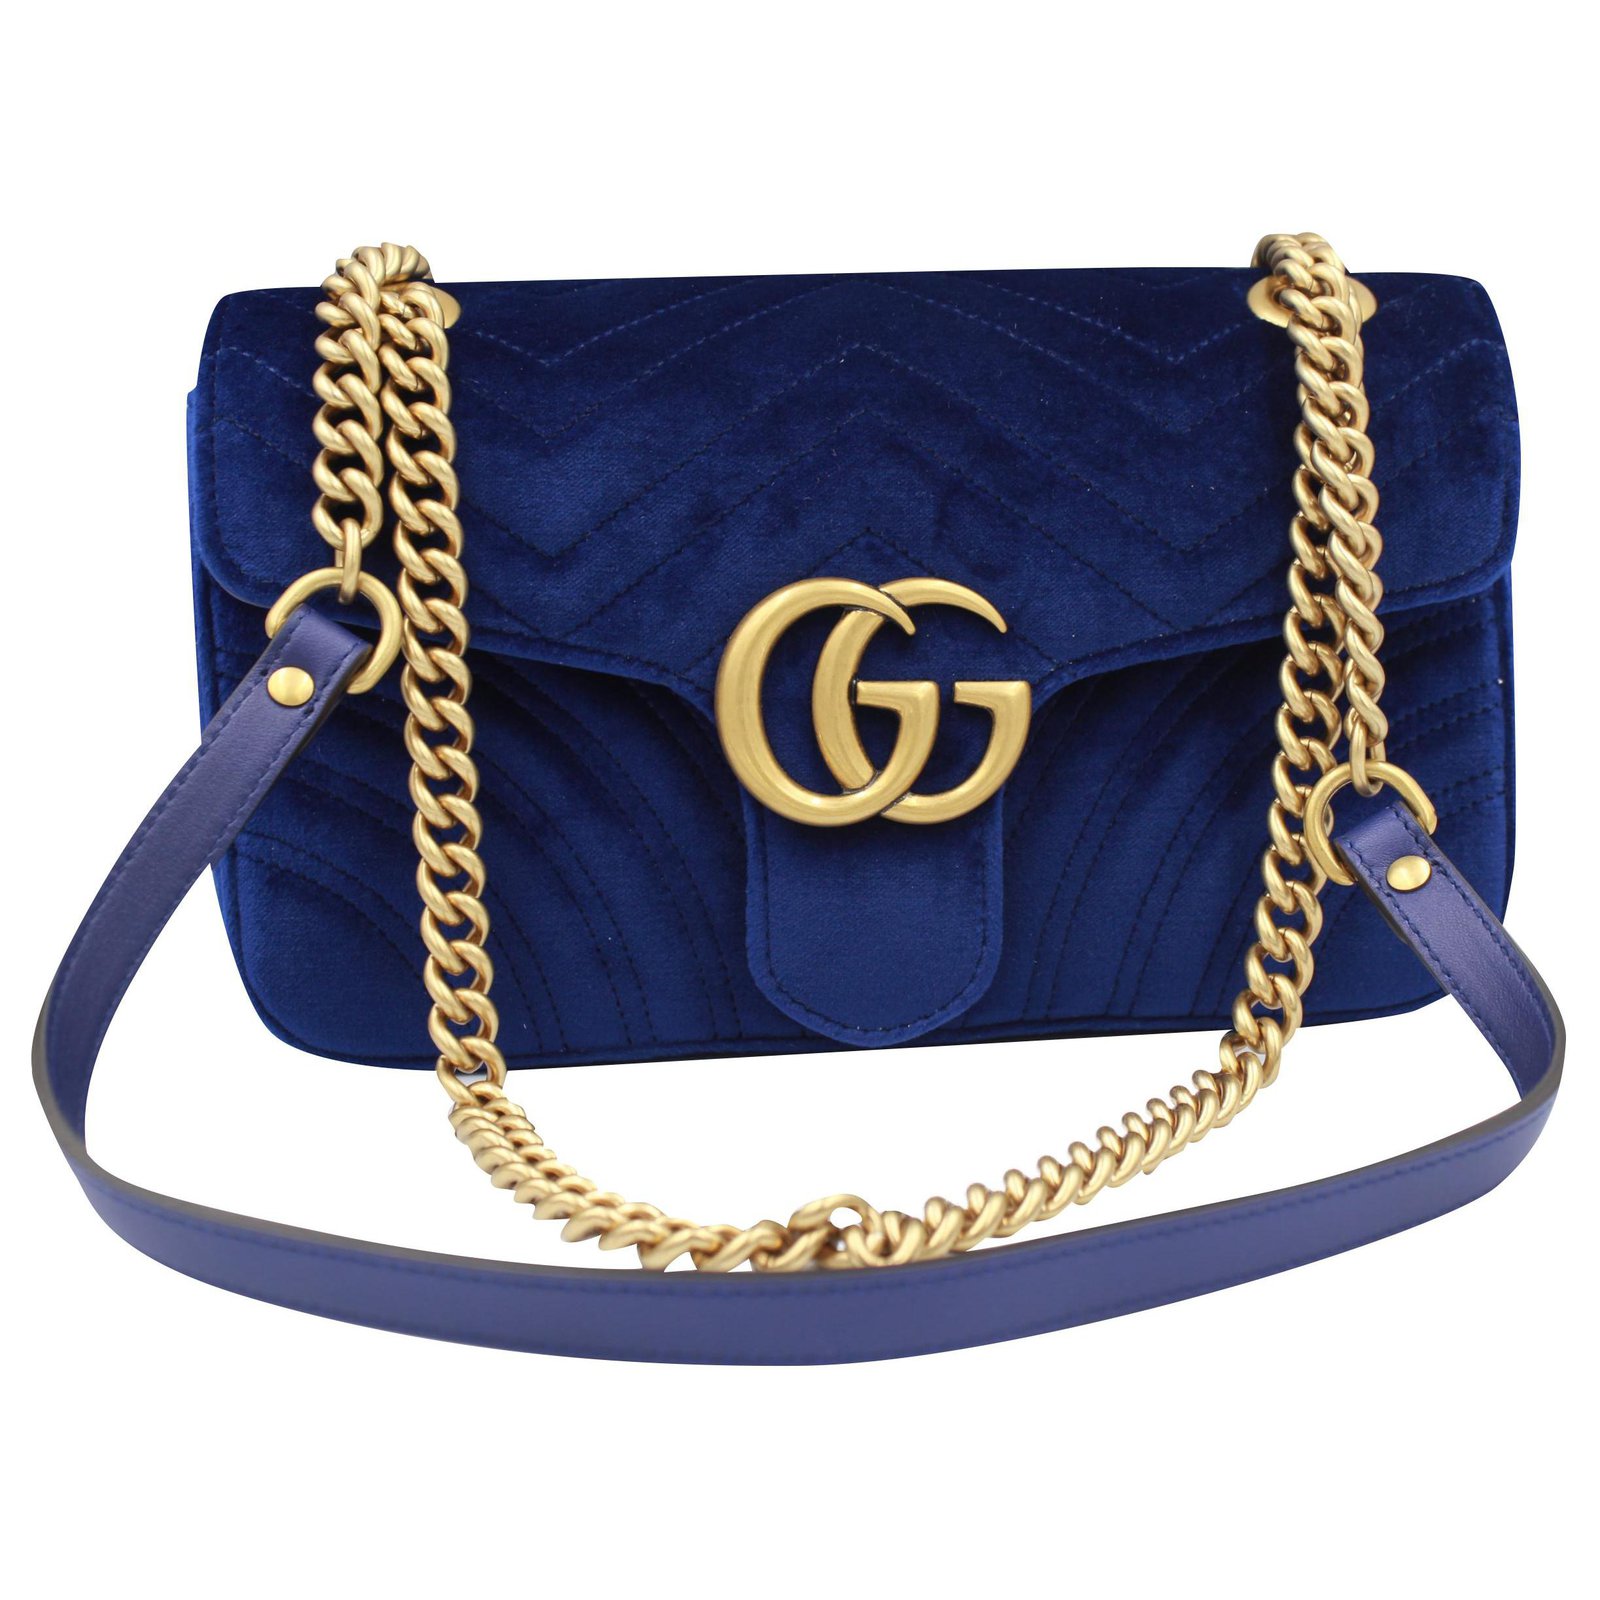 g&g handbags